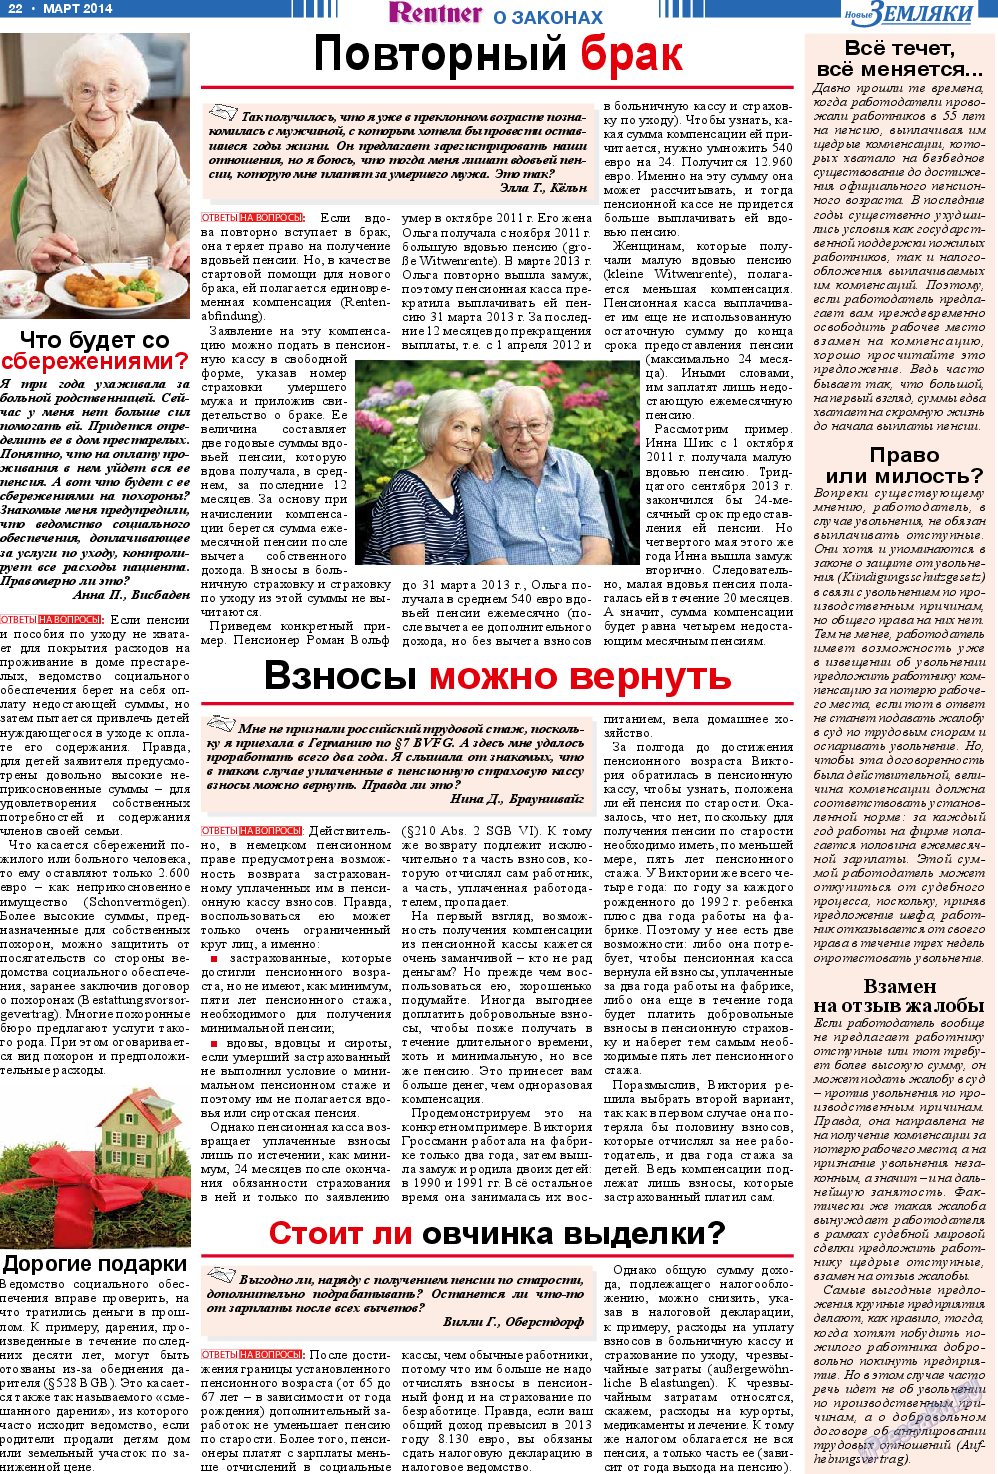 Новые Земляки, газета. 2014 №3 стр.22